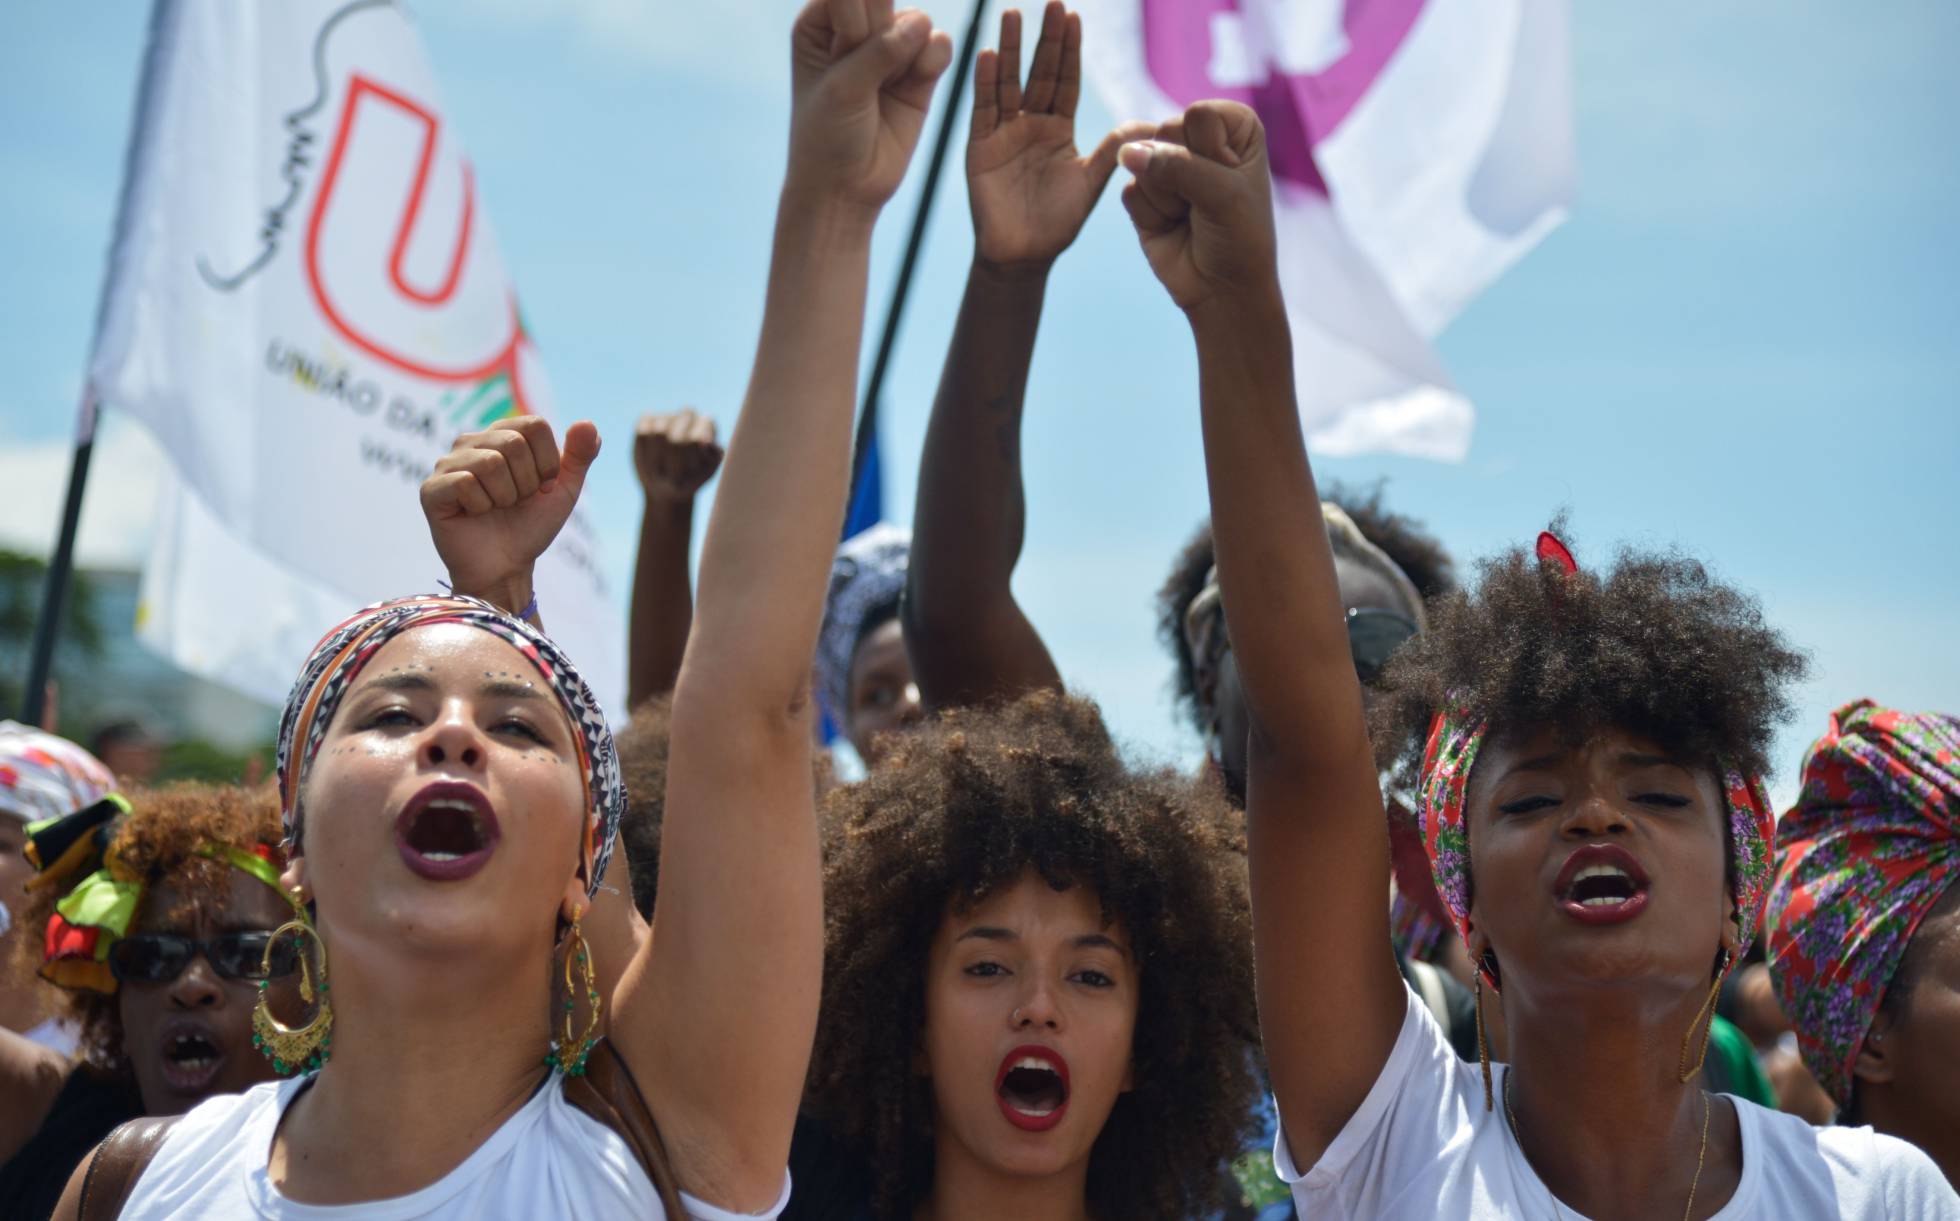 Marcha das Mulheres Negras em Brasília, em 2015. MARCELO CASAL JR AGÊNCIA BRASIL (Reprodução do El País)